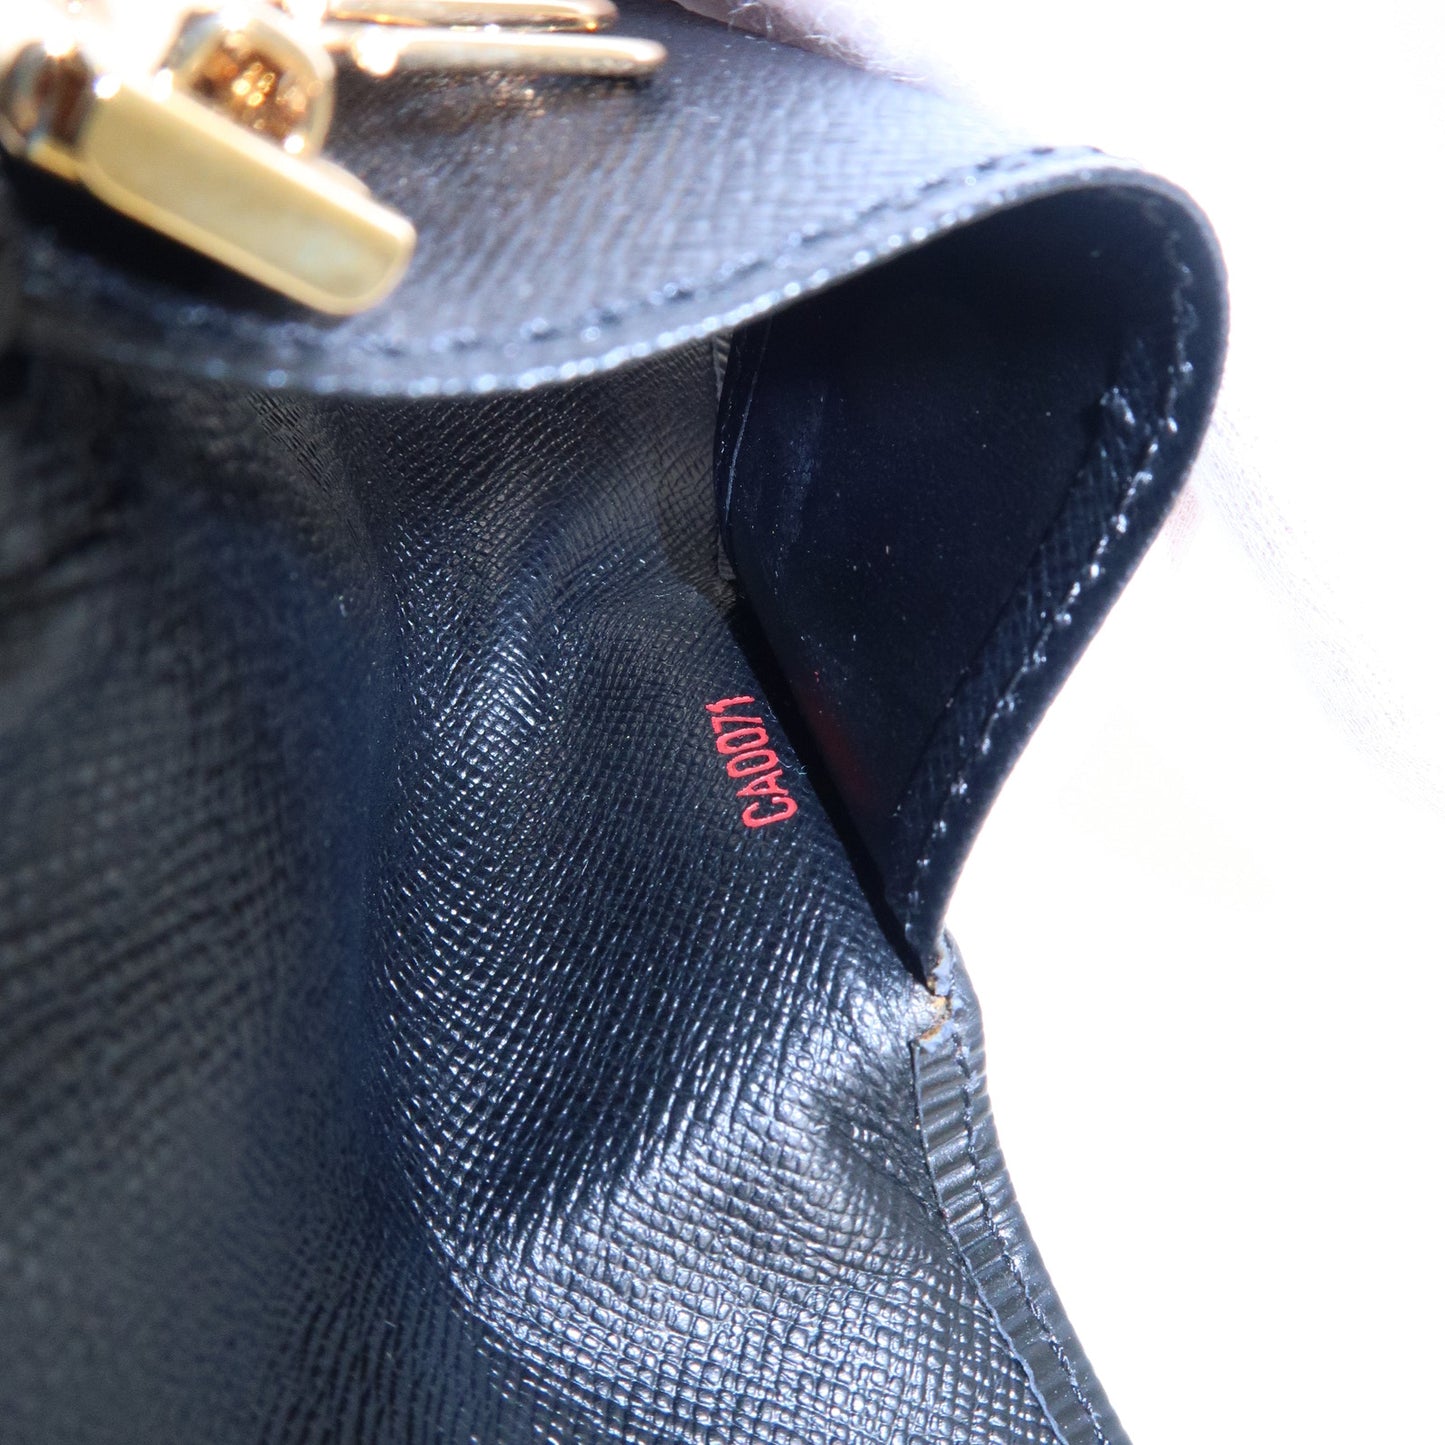 Louis-Vuitton-Epi-Multiclés-4-Key-Holder-Case-Noir-M63822 – dct